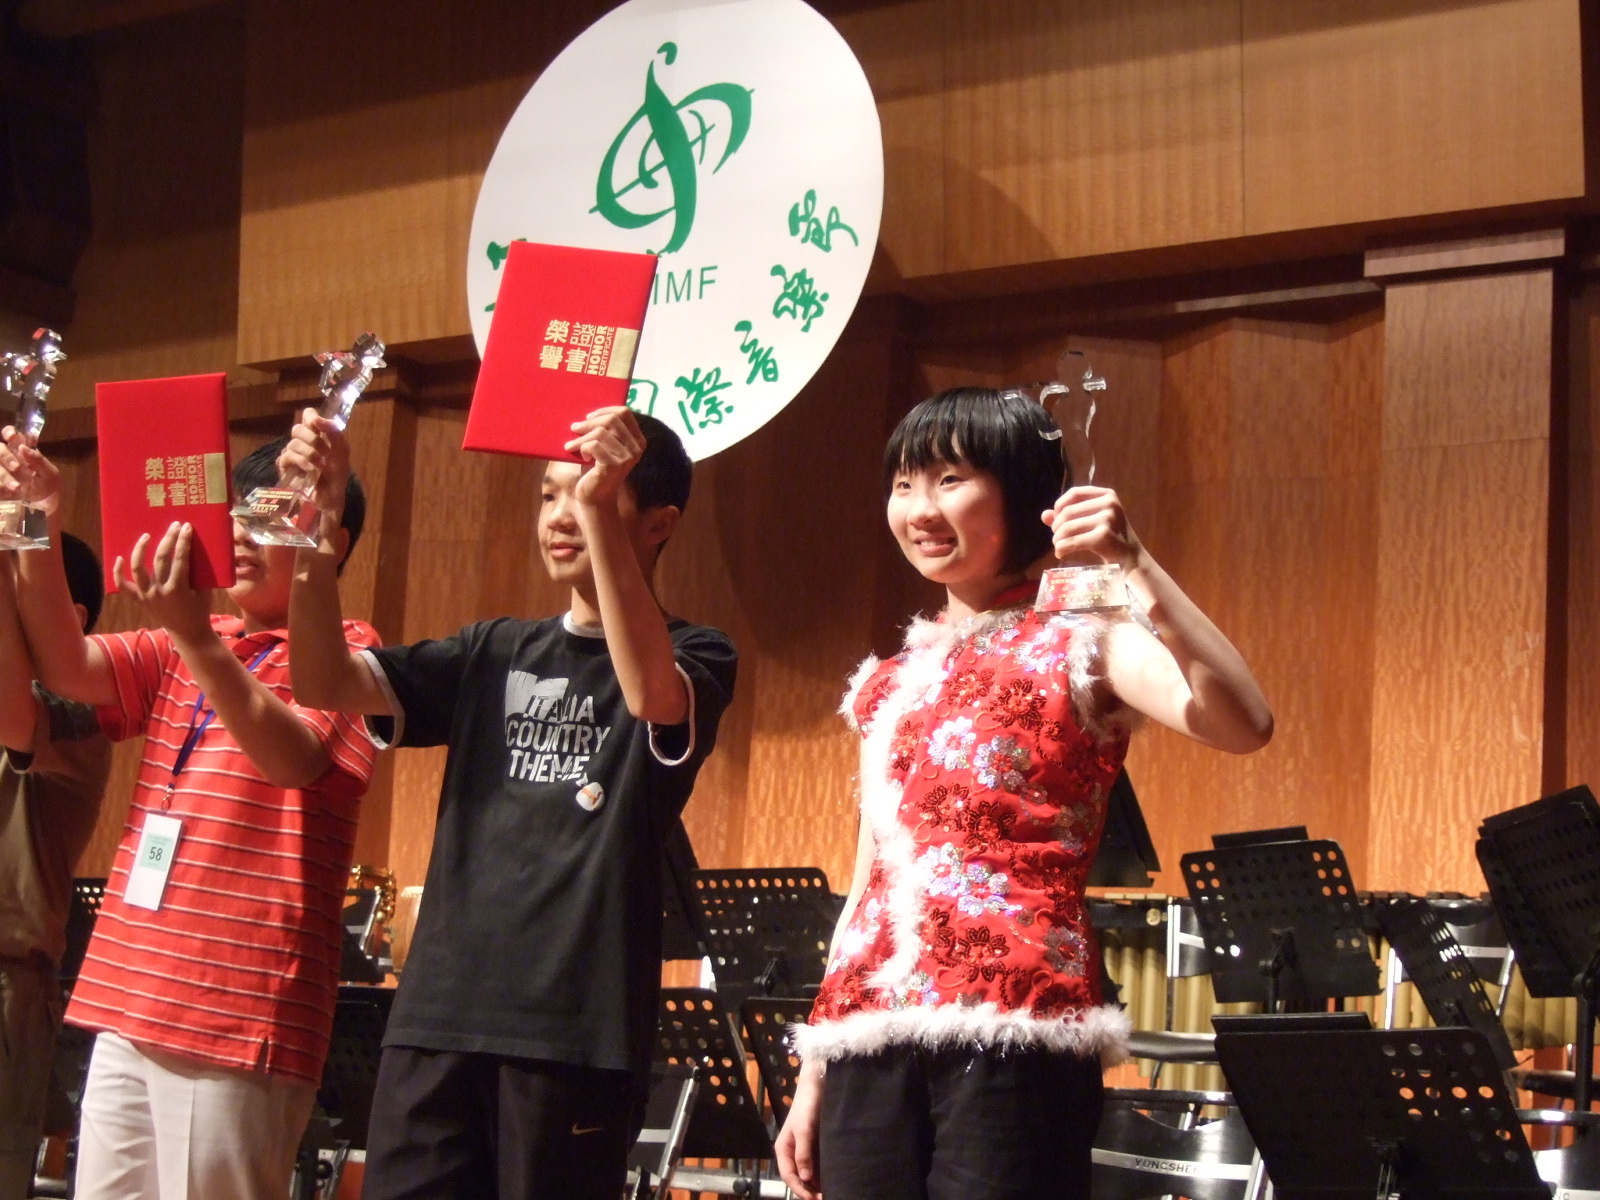 2009上海之春竹笛比賽少年組第一名